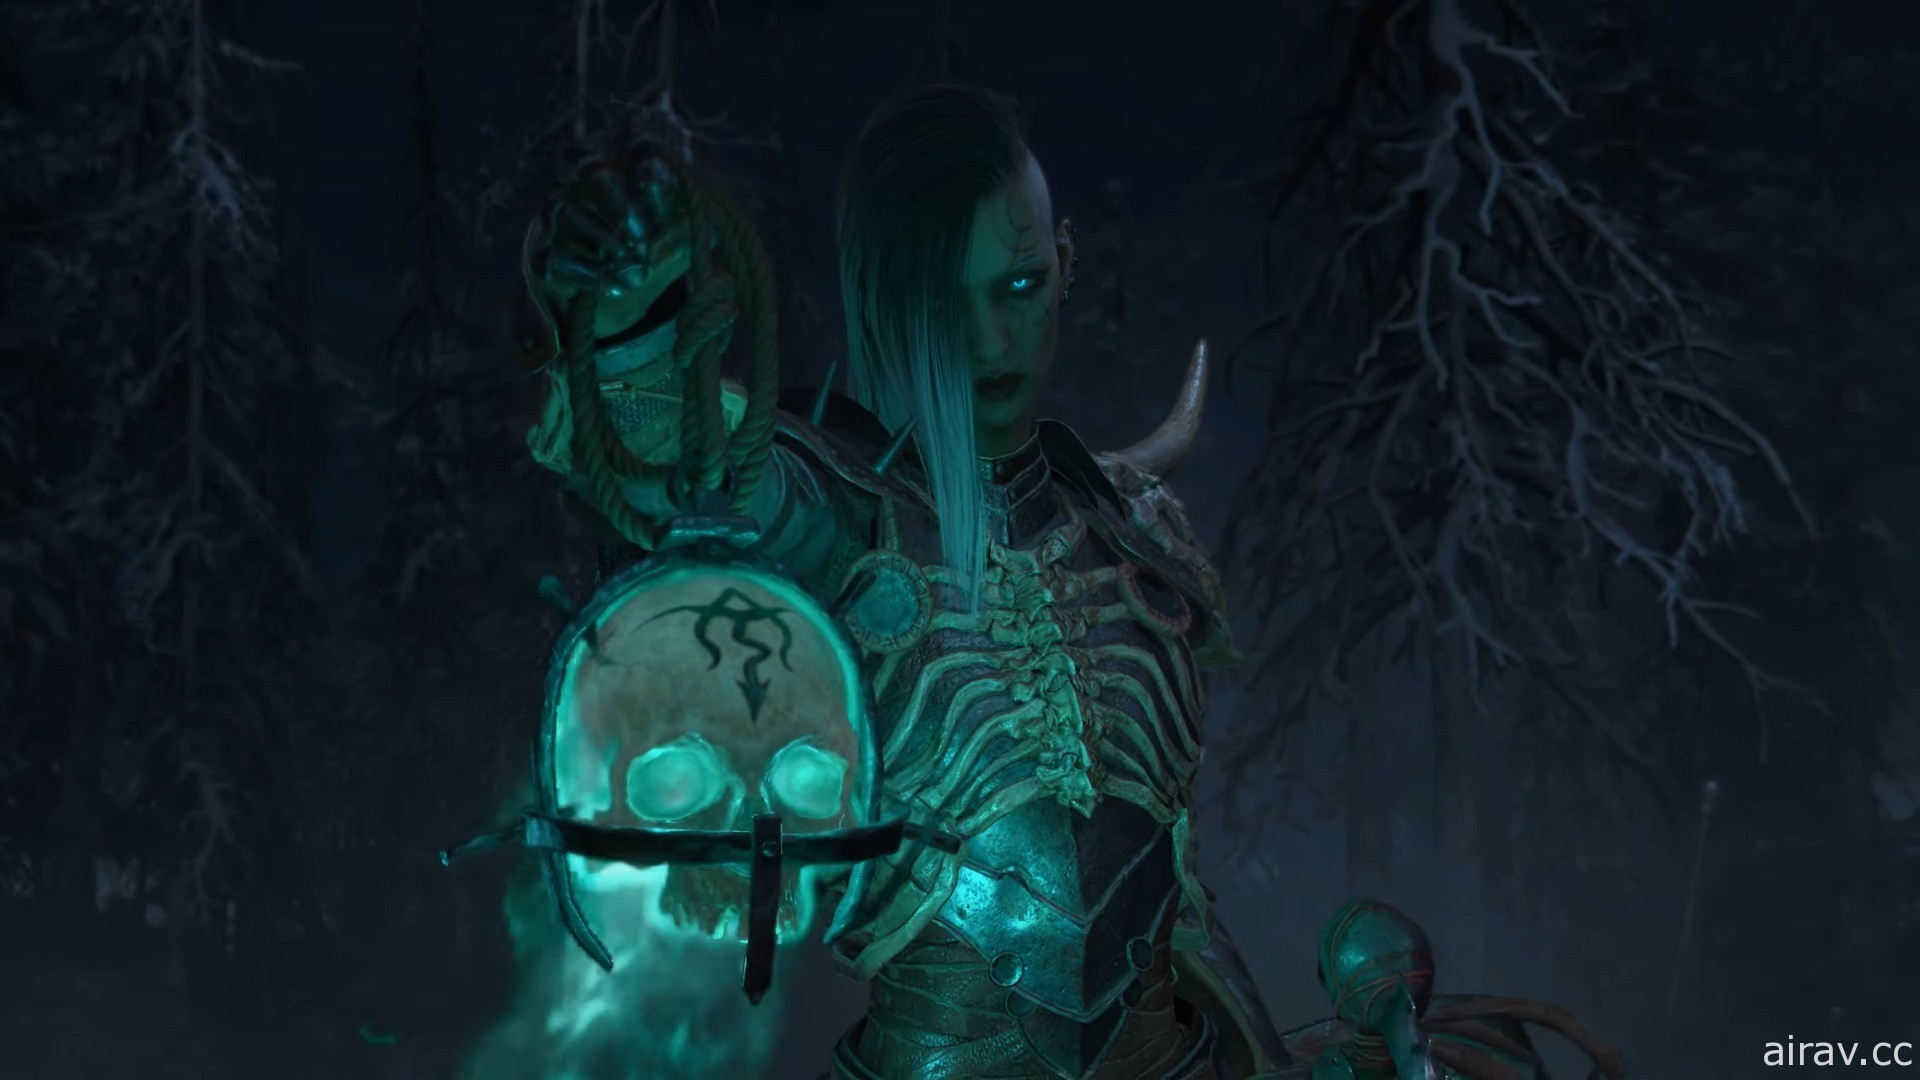 《暗黑破壞神 4》公開職業「死靈法師」介紹影片 遊戲預定 2023 年正式推出